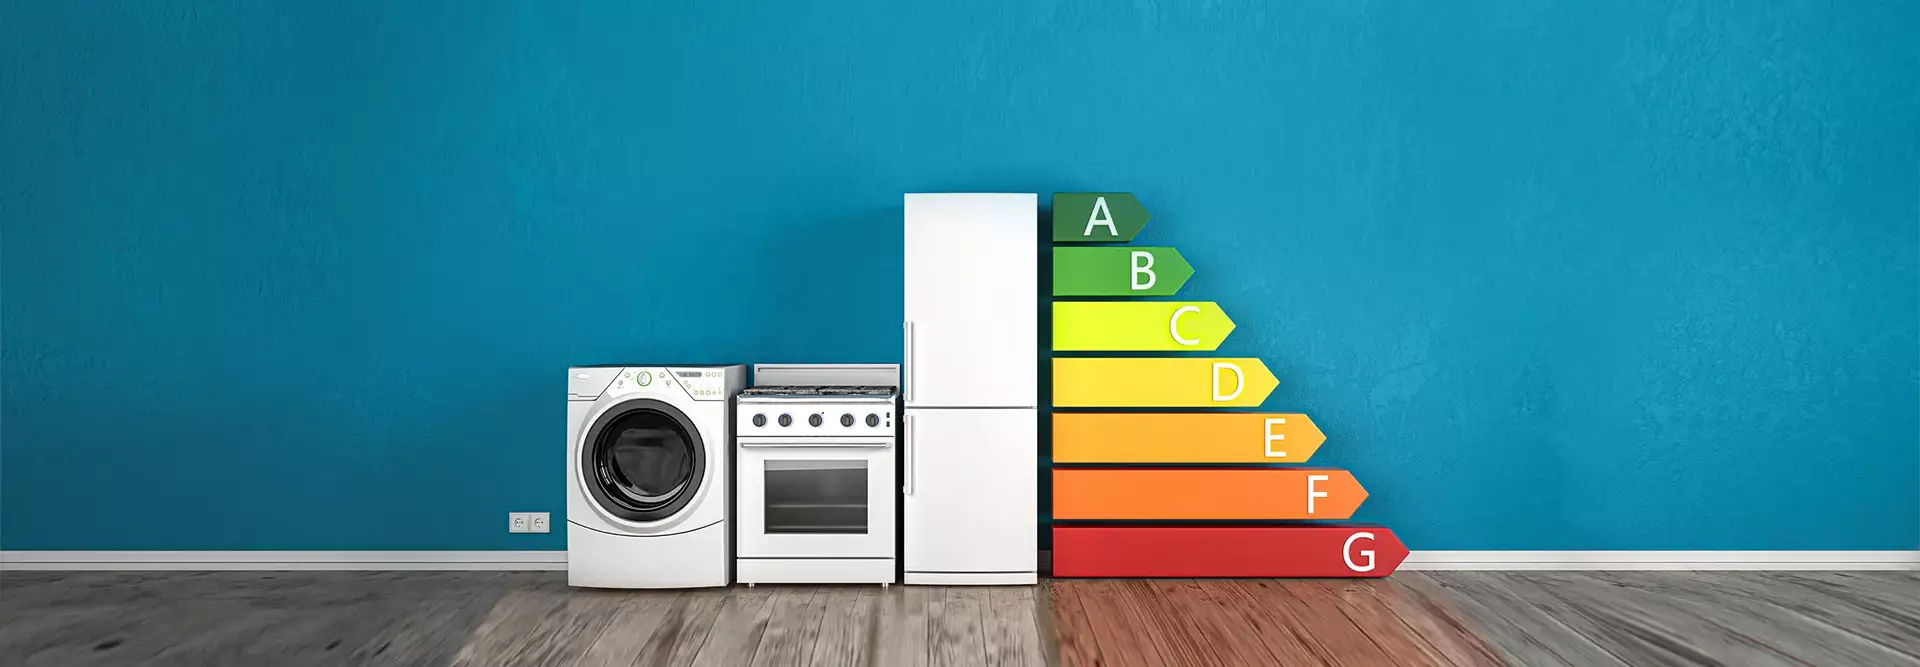 Maquina de lavar fogão e frigorífico com letras gigantes de eficiência energética